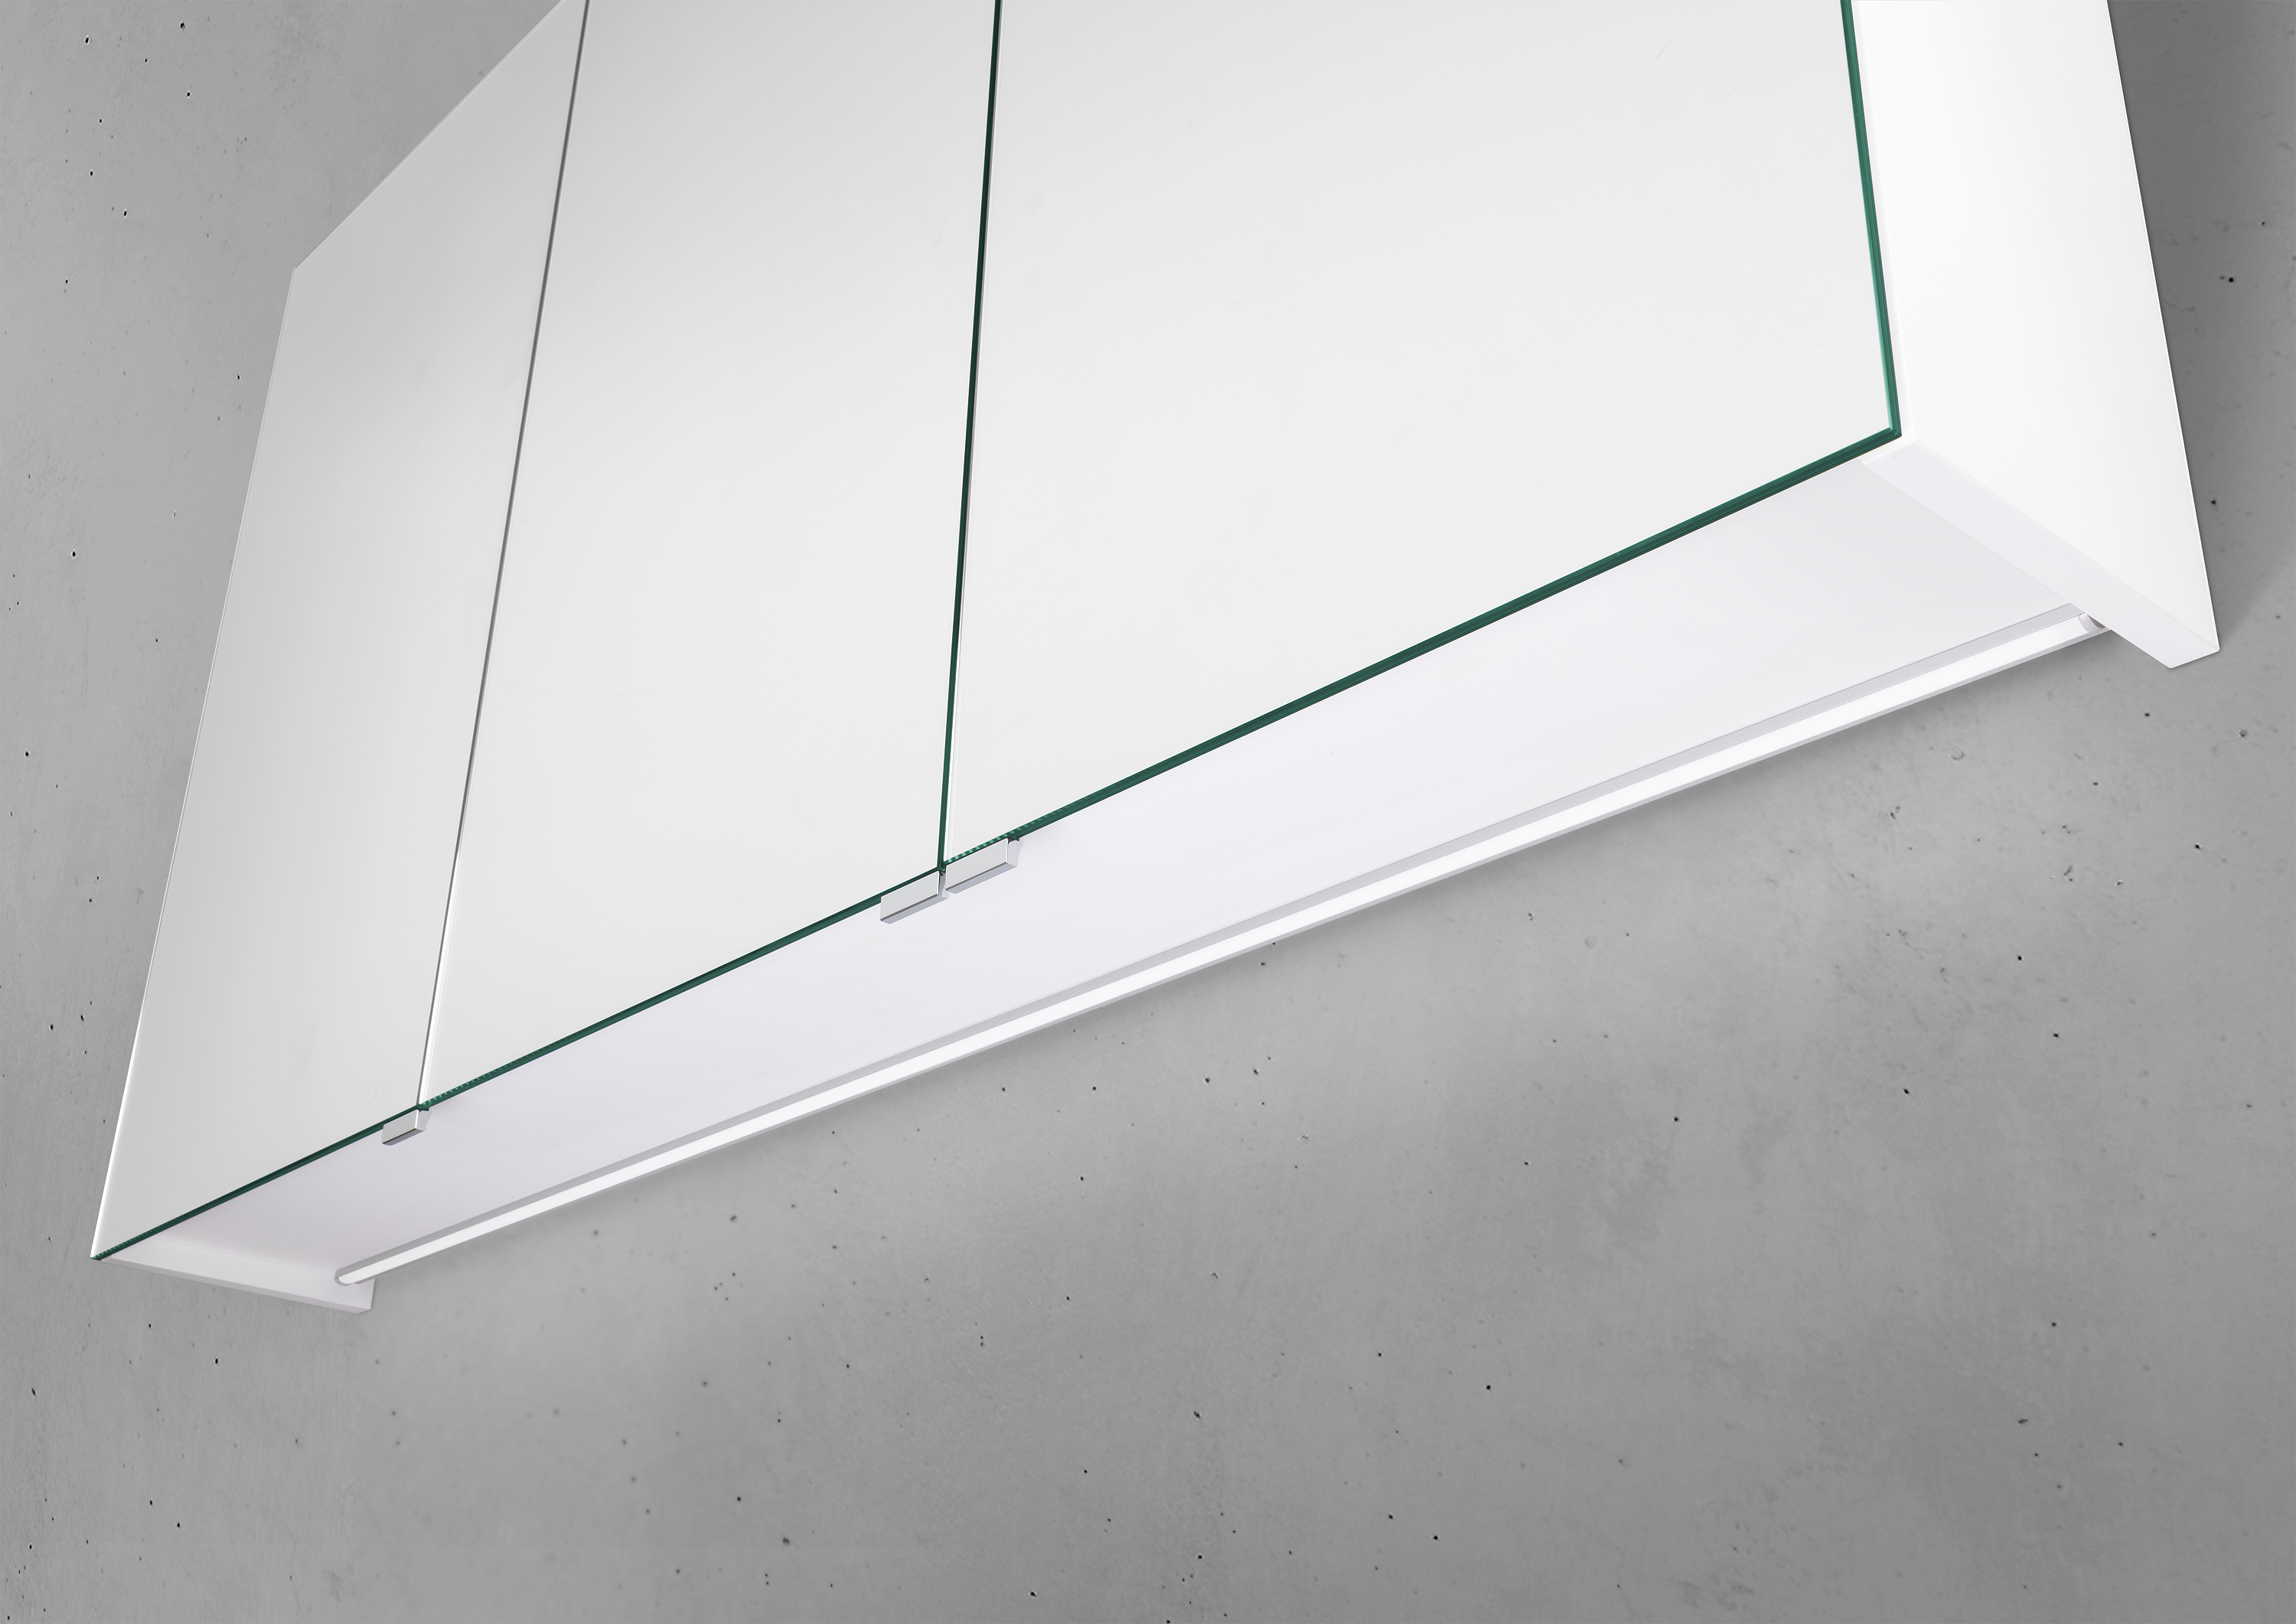 Spiegelschrank 120 cm mit LED Chrom Beleuchtung Doppelspiegeltüren